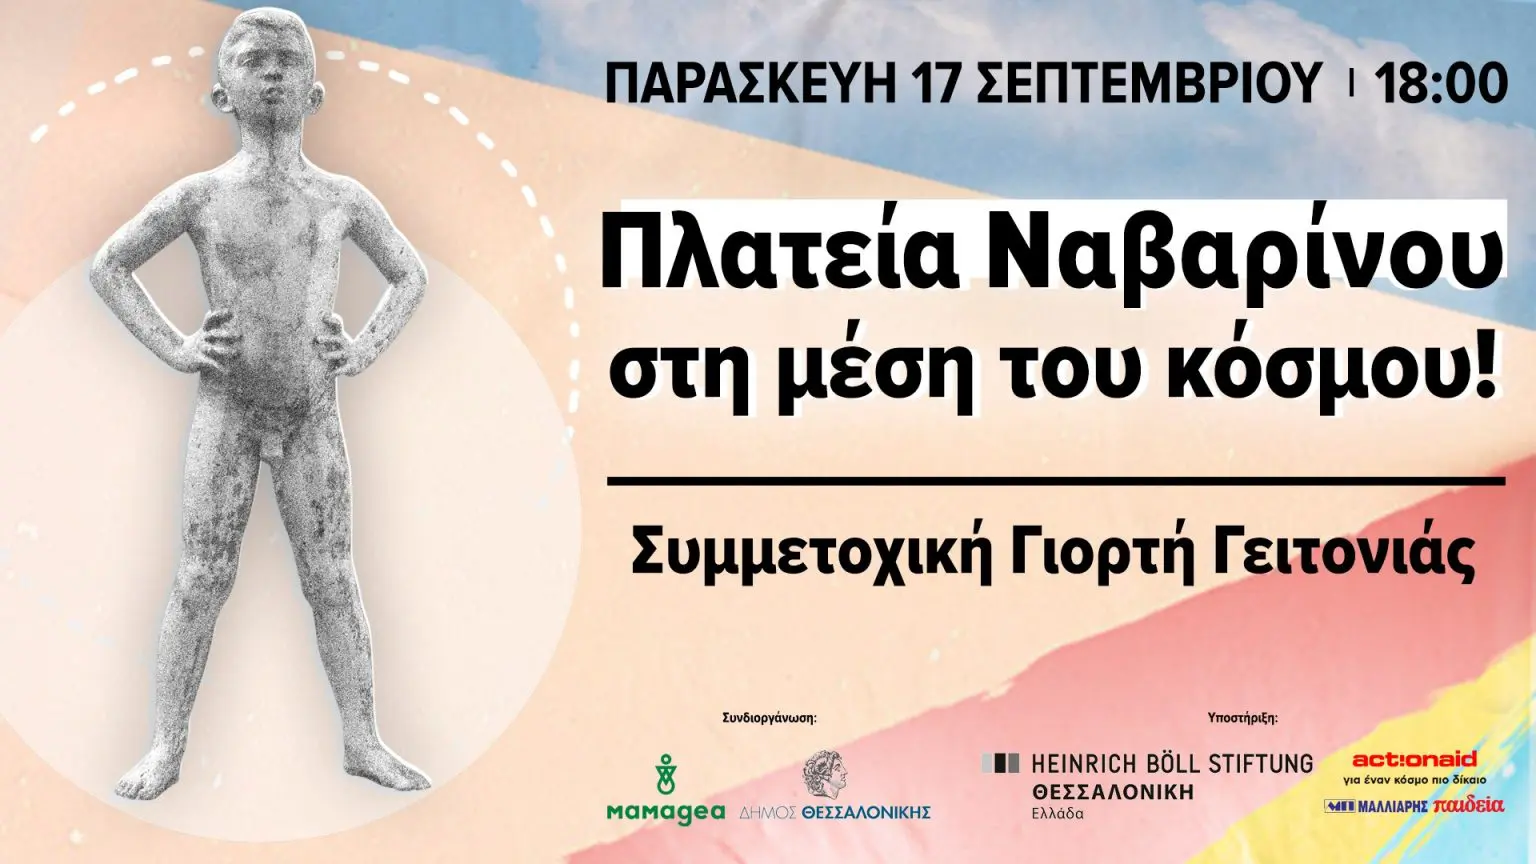 Γιορτή Γειτονιάς στη Θεσσαλονίκη “Πλατεία Ναβαρίνου: Στη Μέση του Κόσμου!”